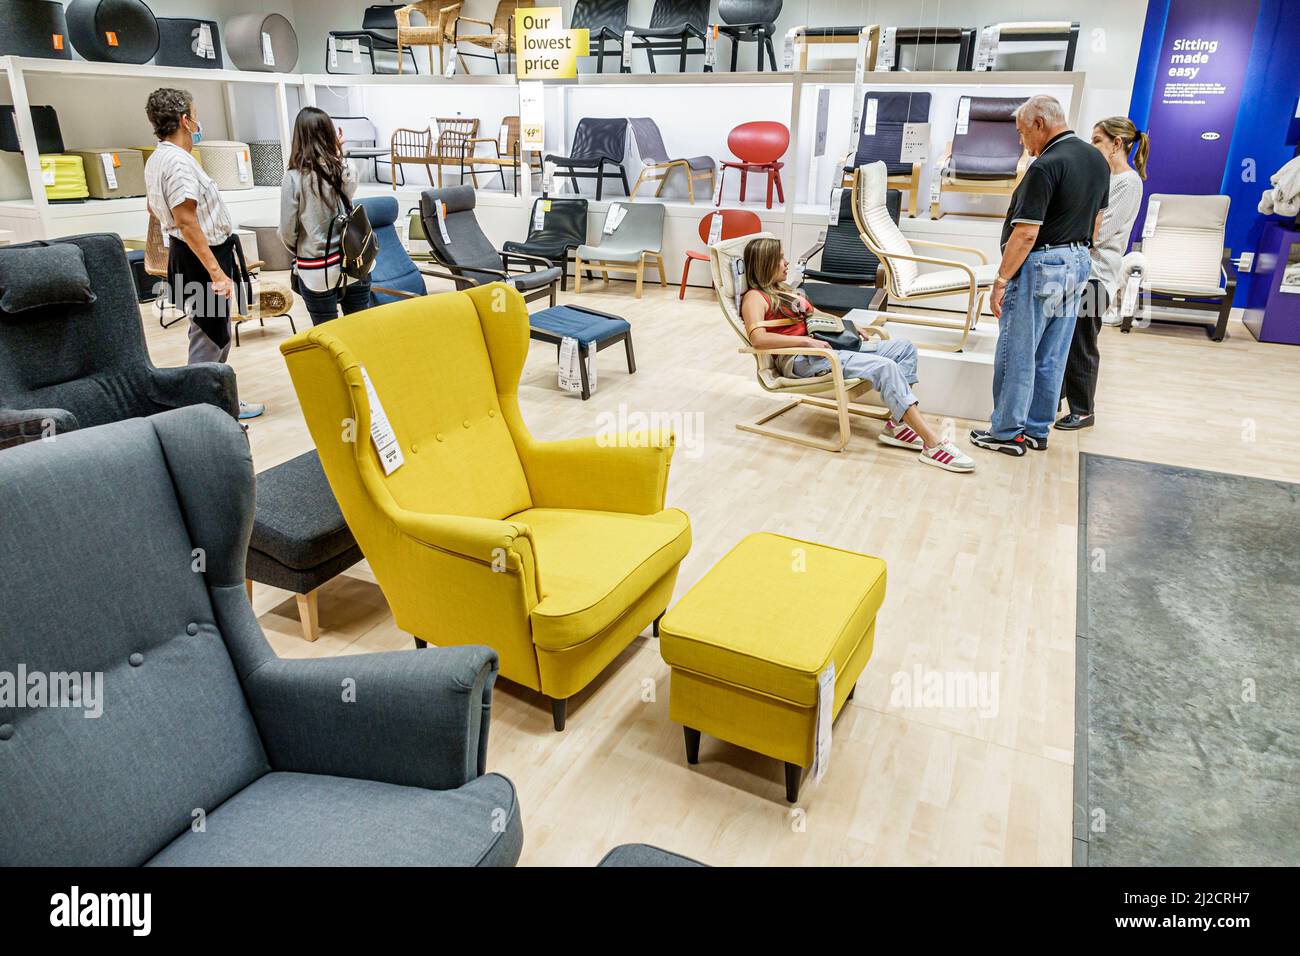 Miami Florida IKEA maison biens meubles accessoires meubles décor shopping acheteurs à l'intérieur de l'intérieur exposition vente chaises famille recherche essayer Banque D'Images